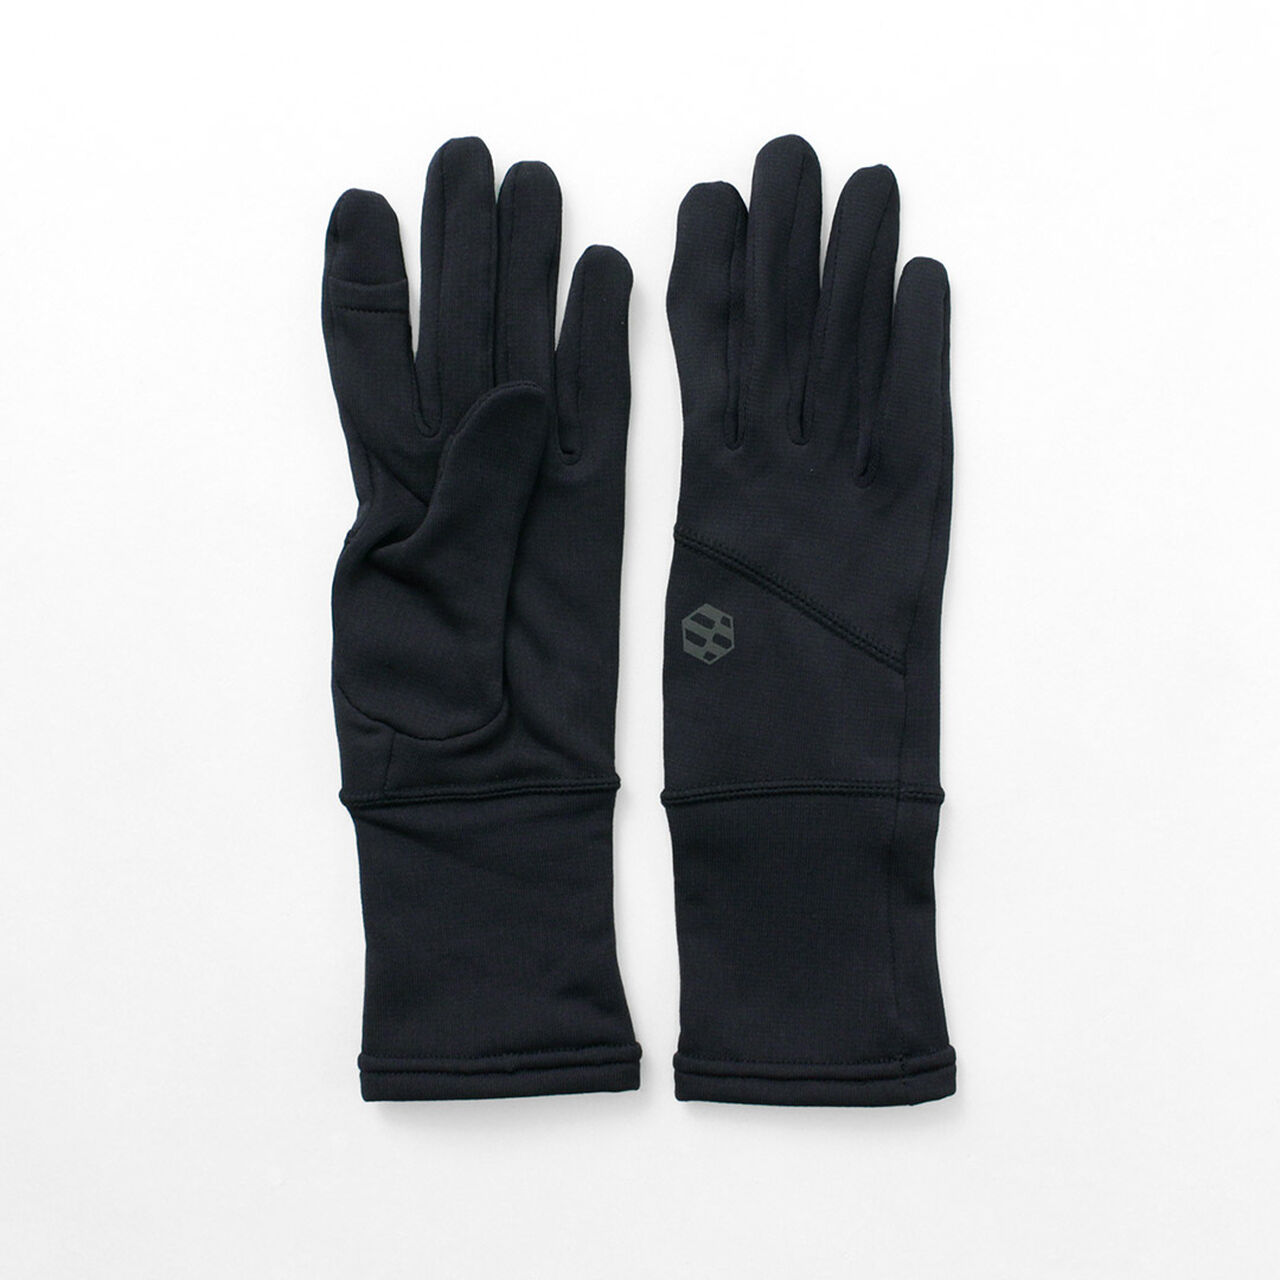 Hobo GRID gloves,Black, large image number 0